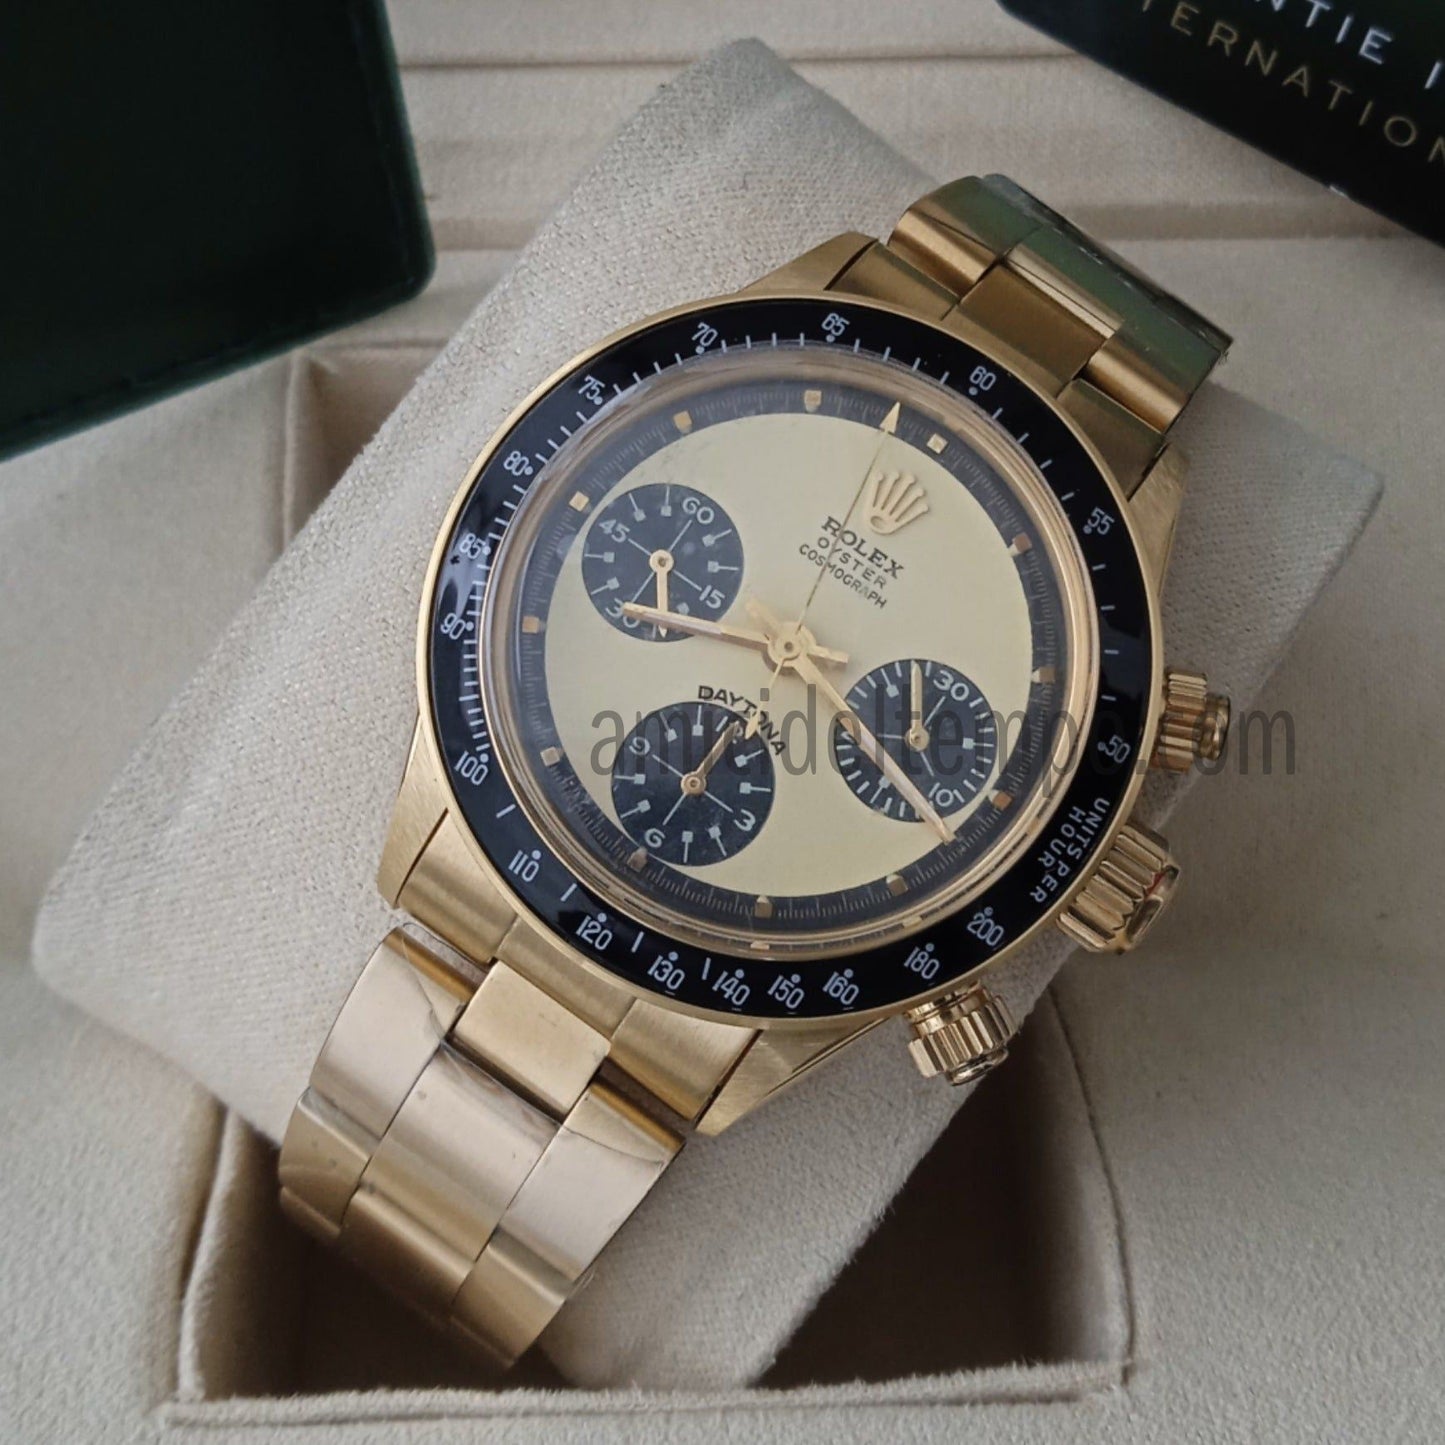 Rolex replica daytona vintage 6241 oro orologio replica | repliche rolex | Amici del Tempo